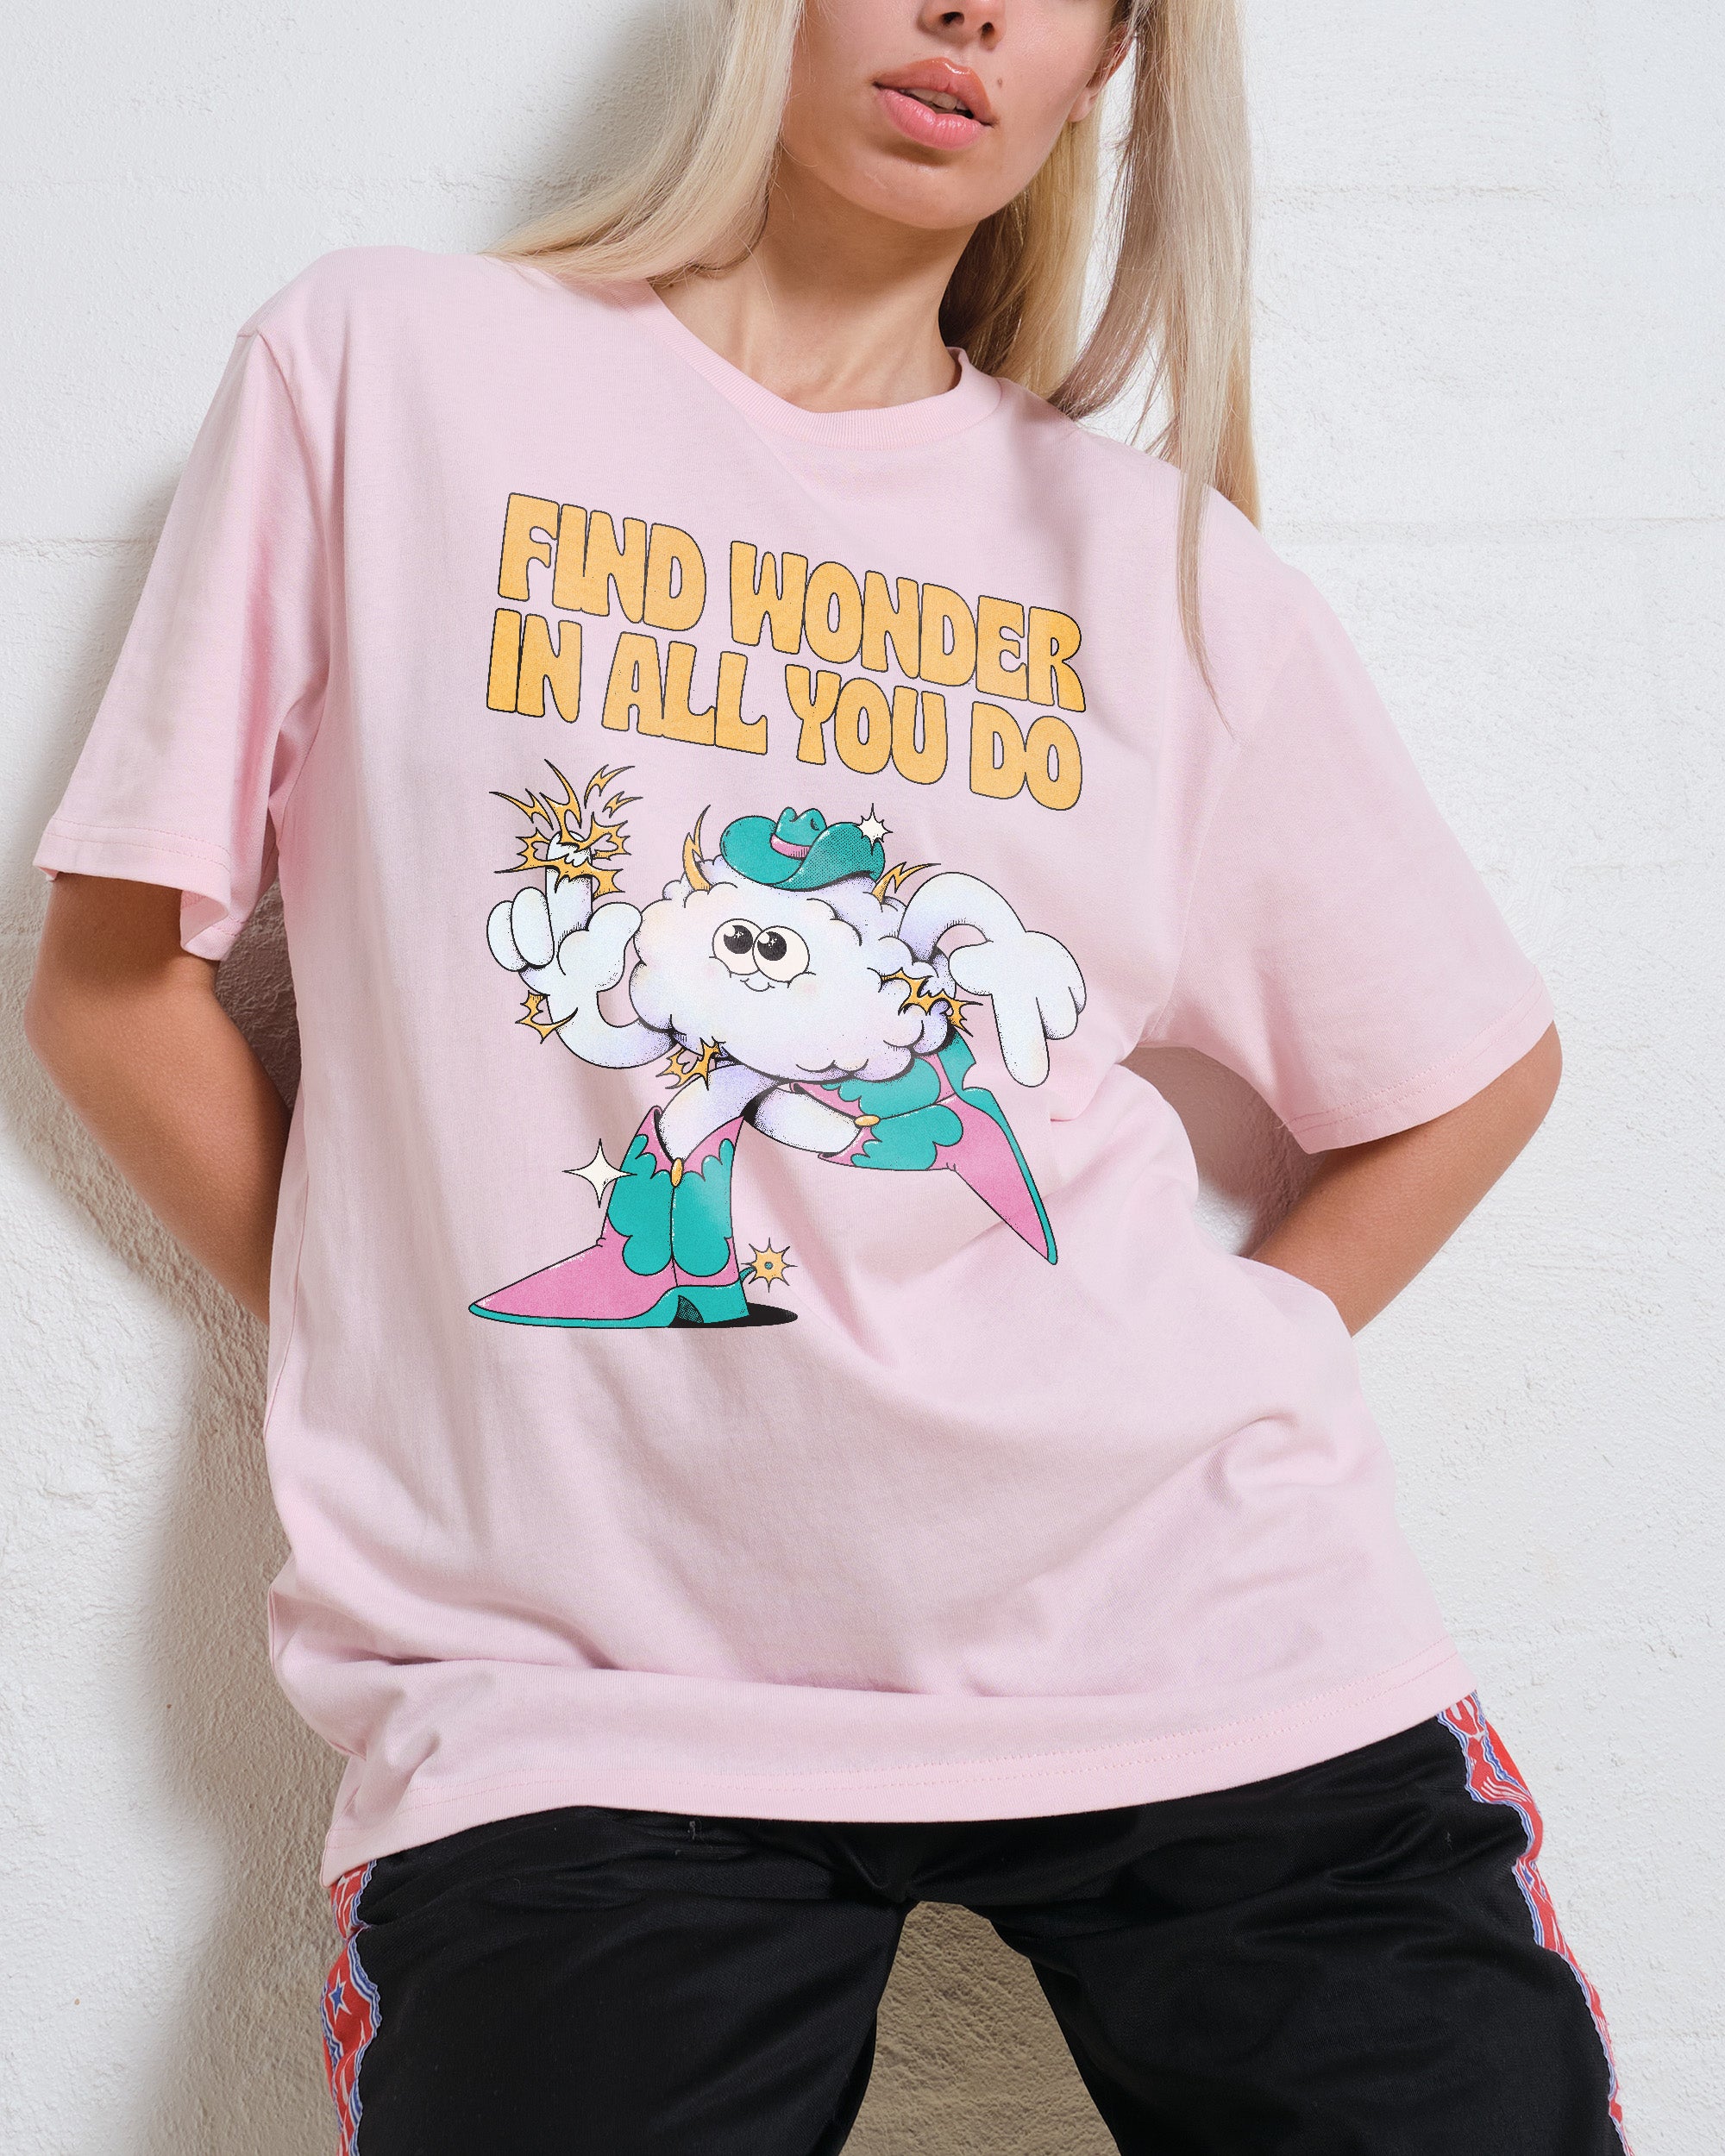 Find Wonder T-Shirt Australia Online